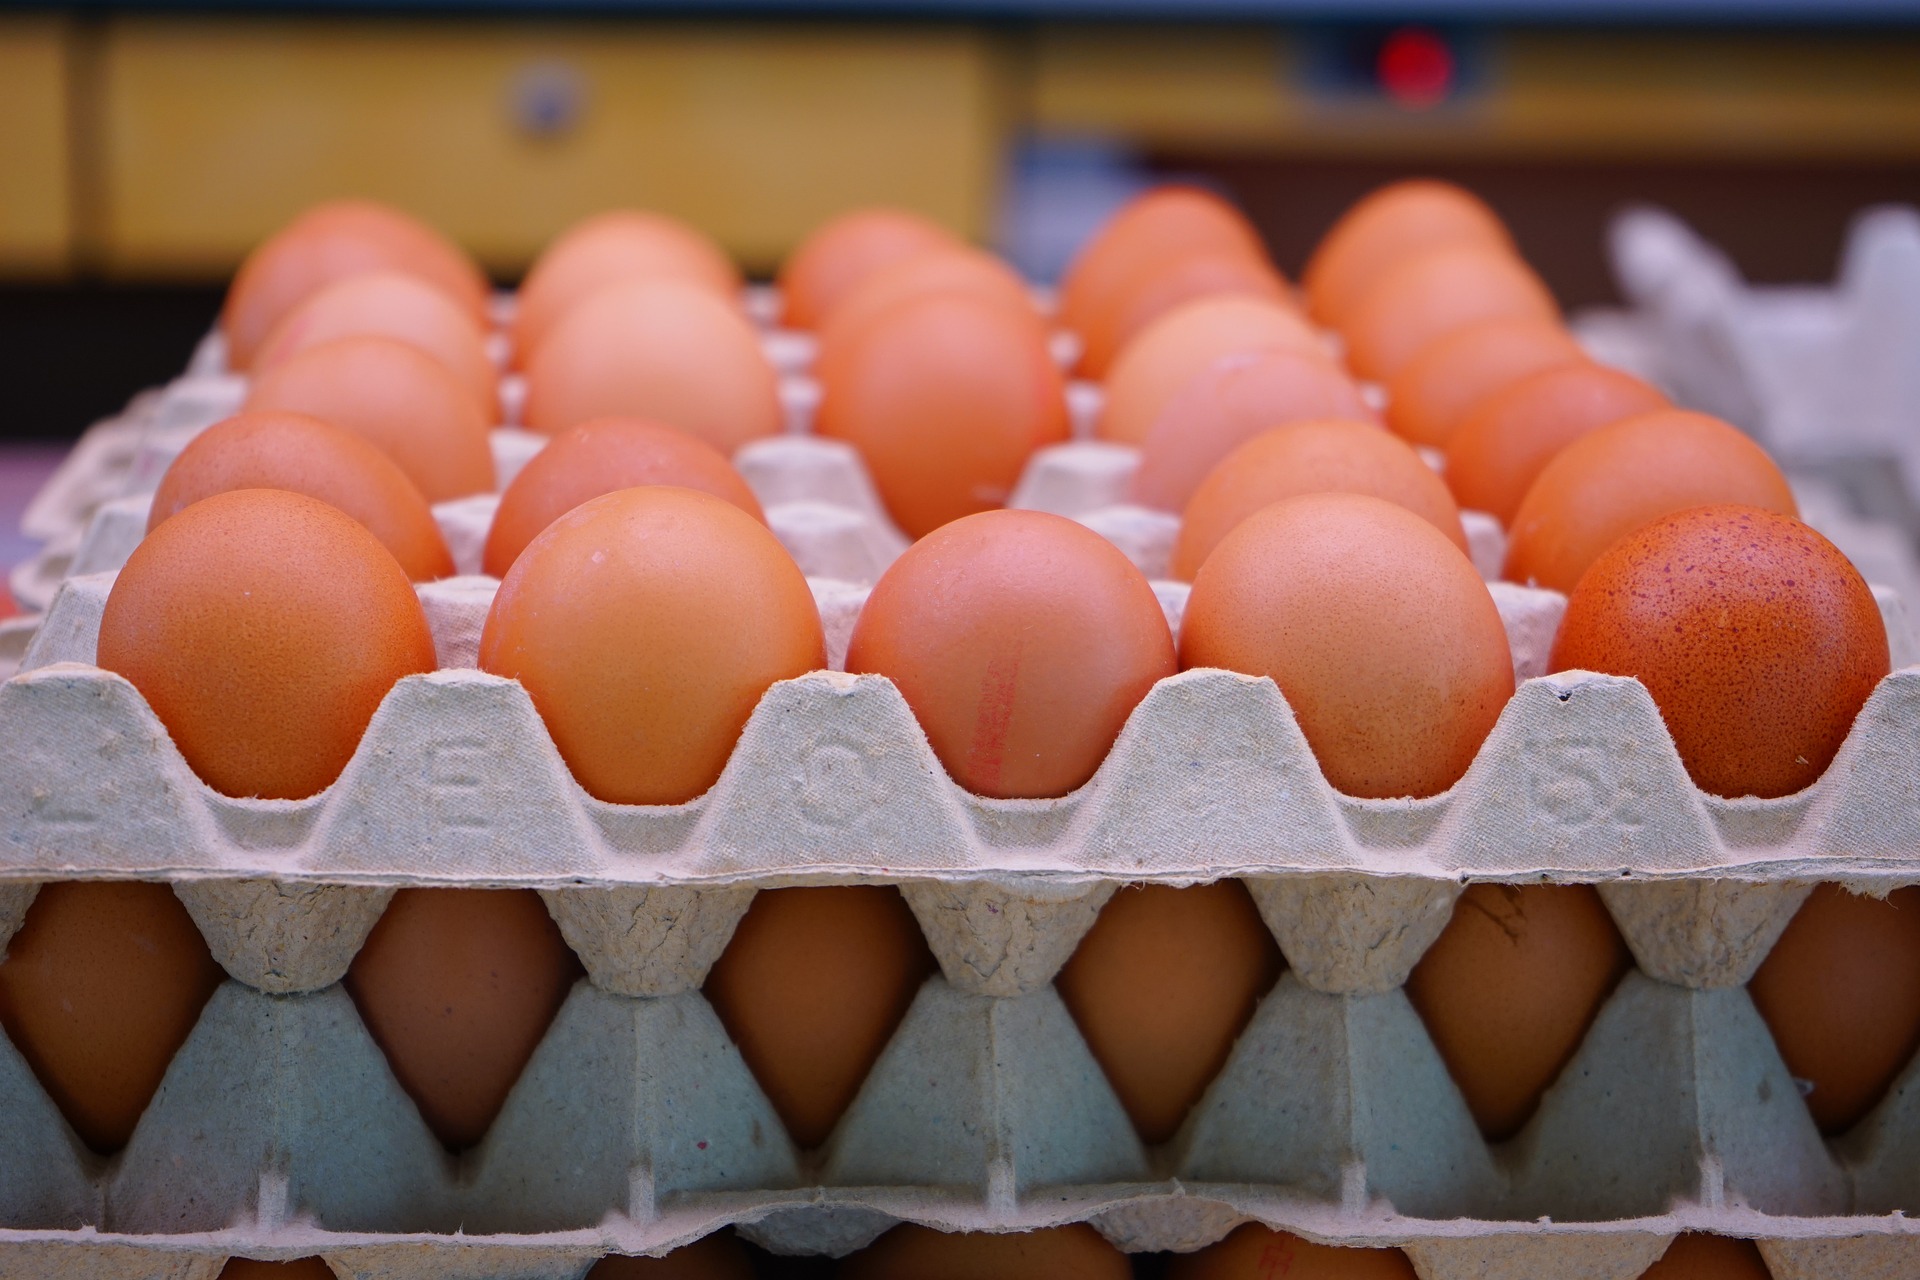 Куриные яйца в лотках. Фото pixabay.com